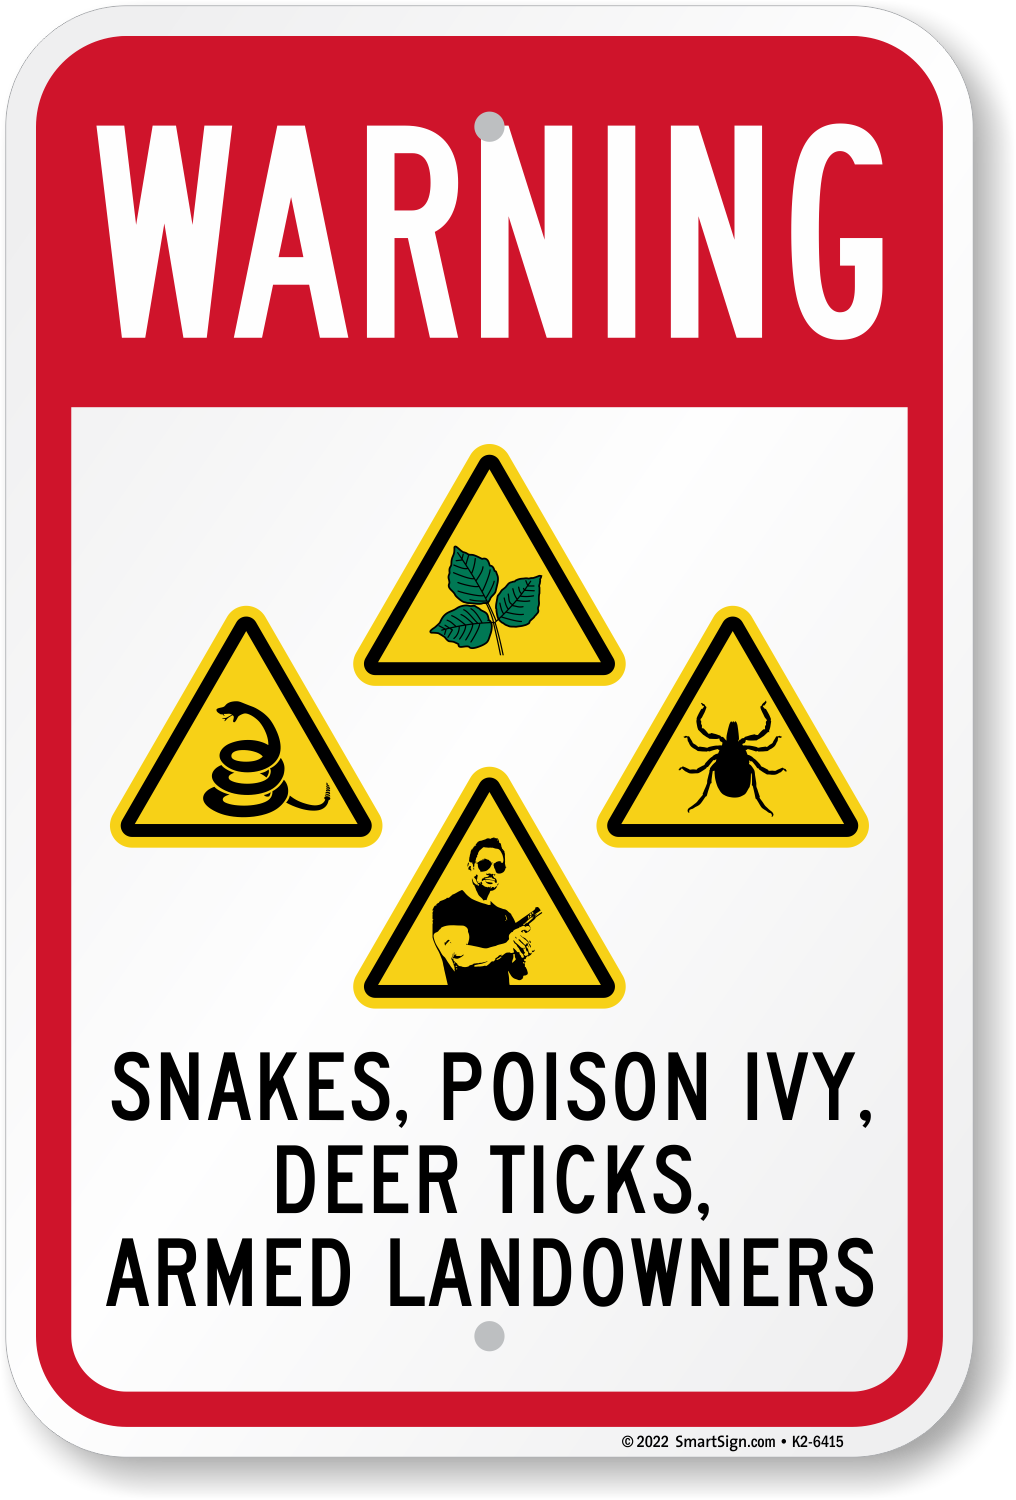 Snakes Poison Ivy Ticks Armed Landowners Warning Sign, SKU: K2-6415